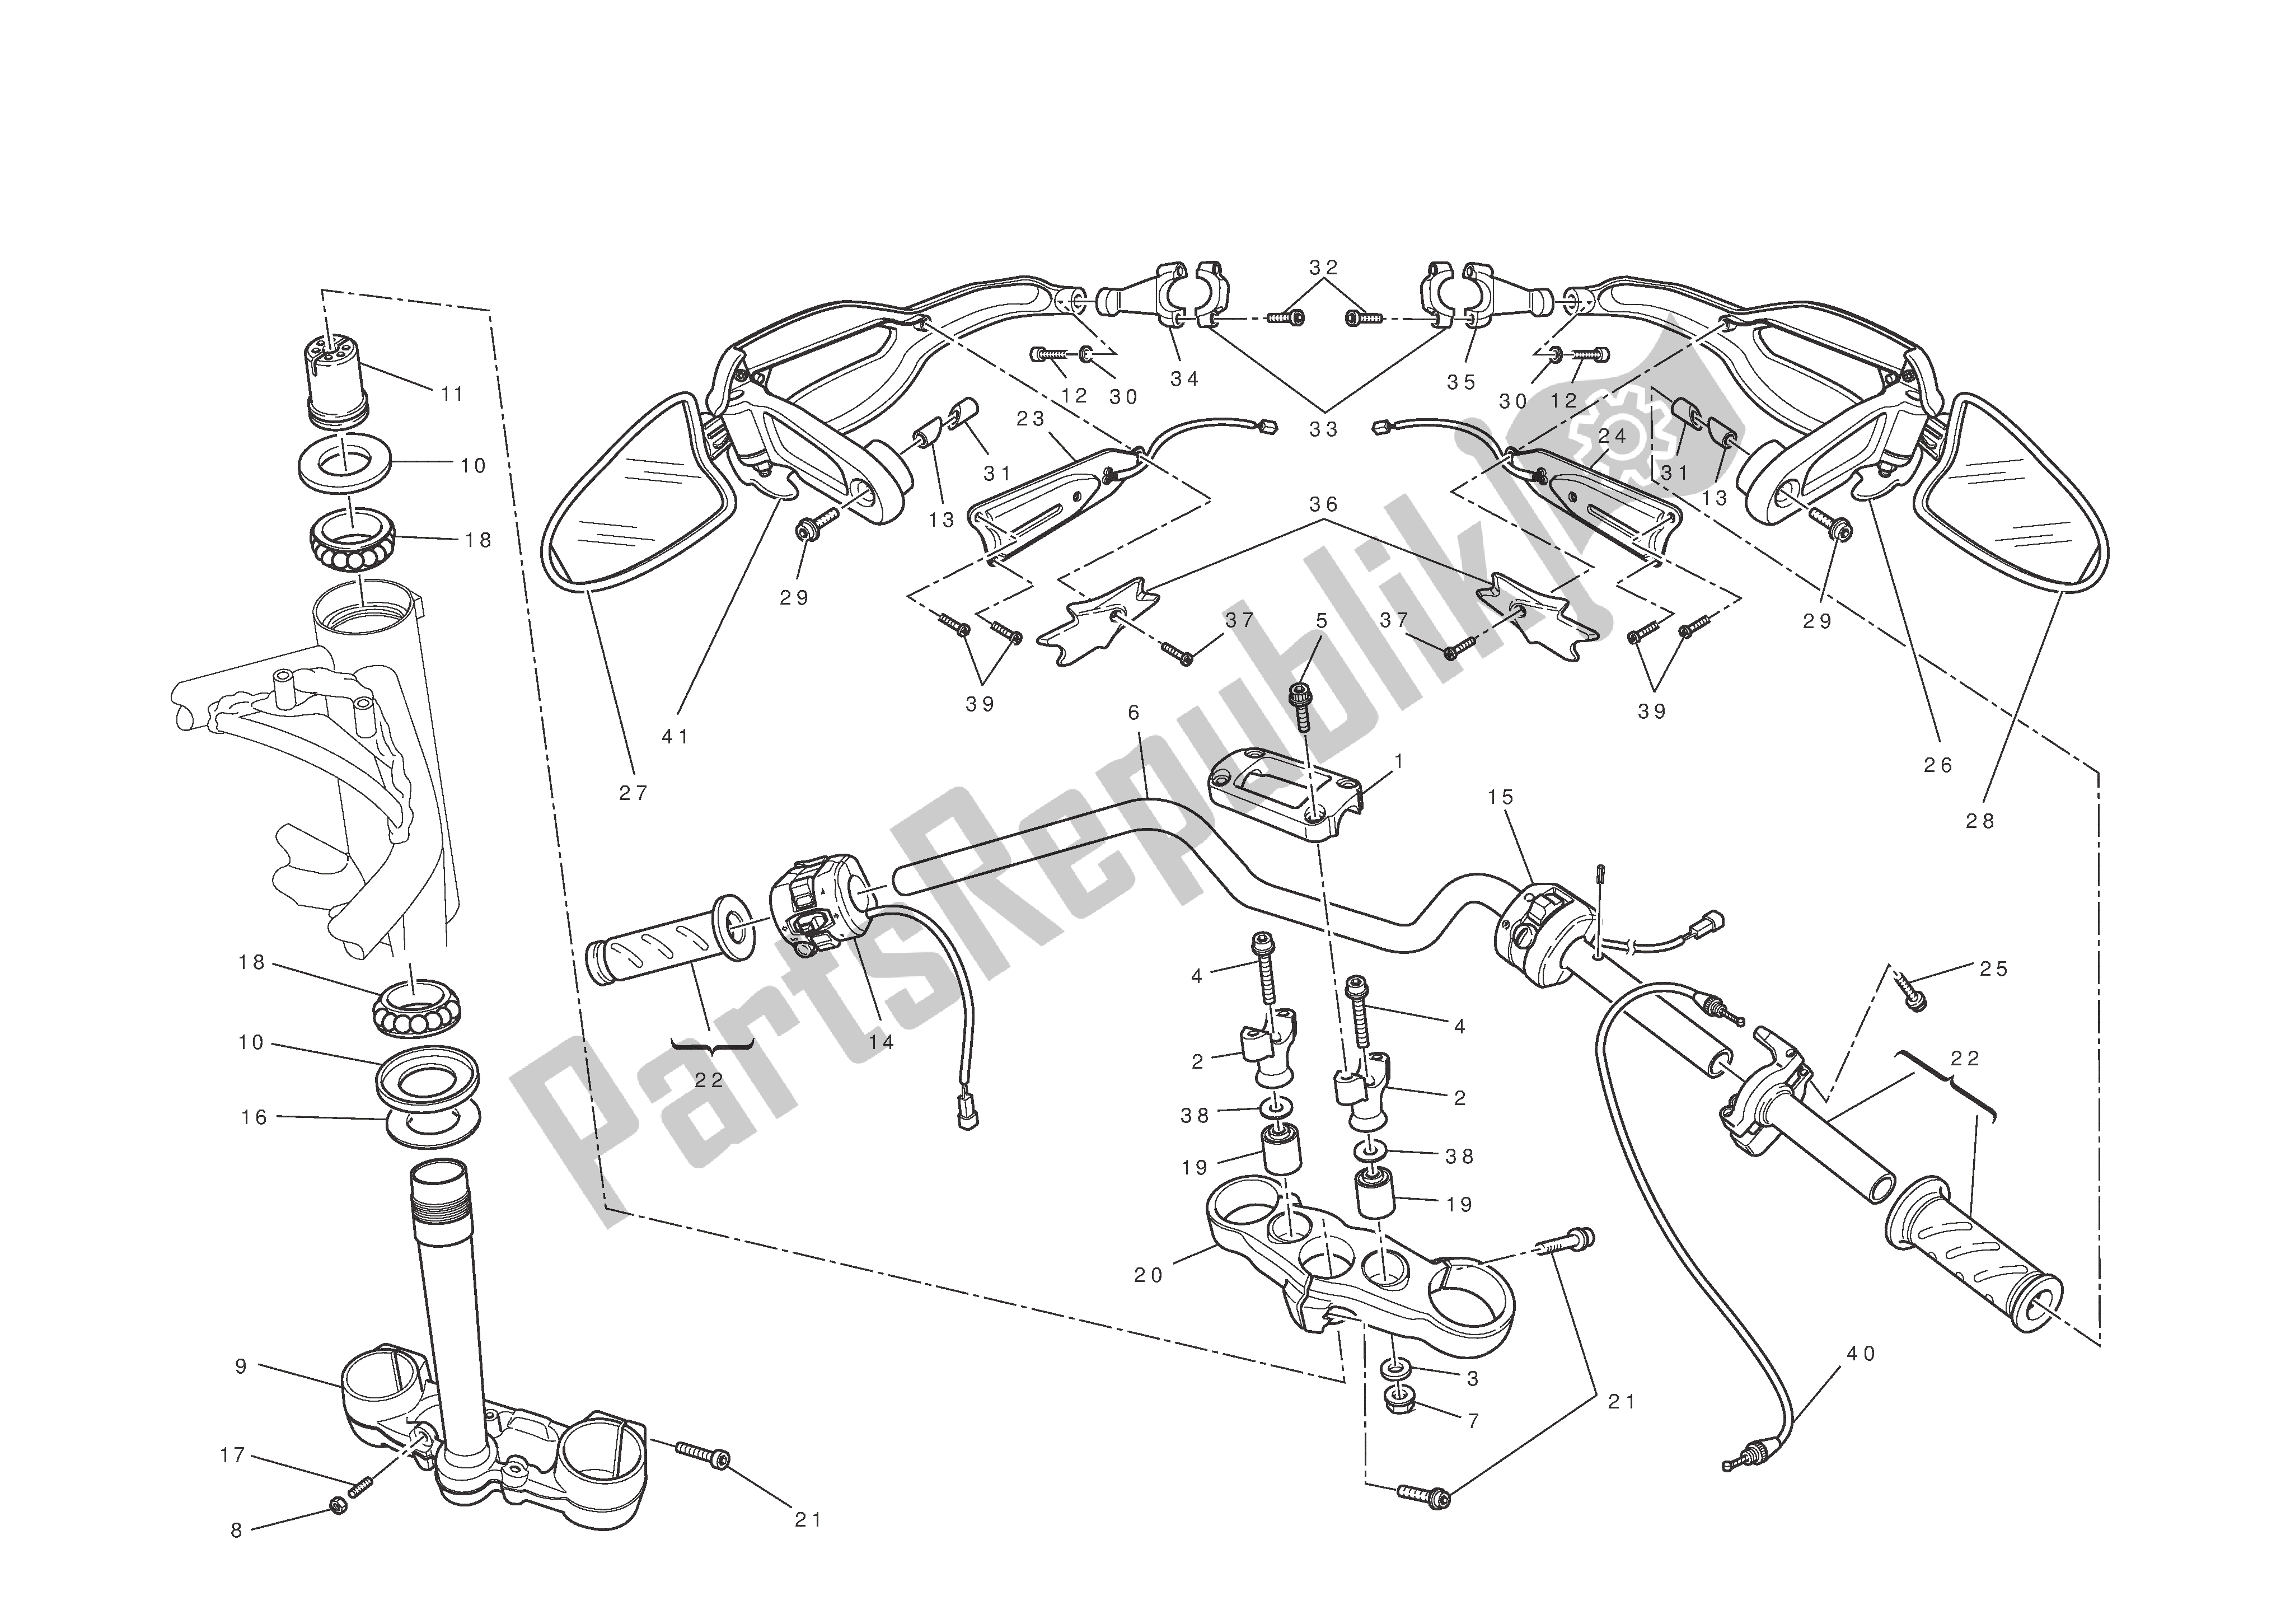 Todas las partes para Manillar Y Controles de Ducati Hypermotard 796 2010